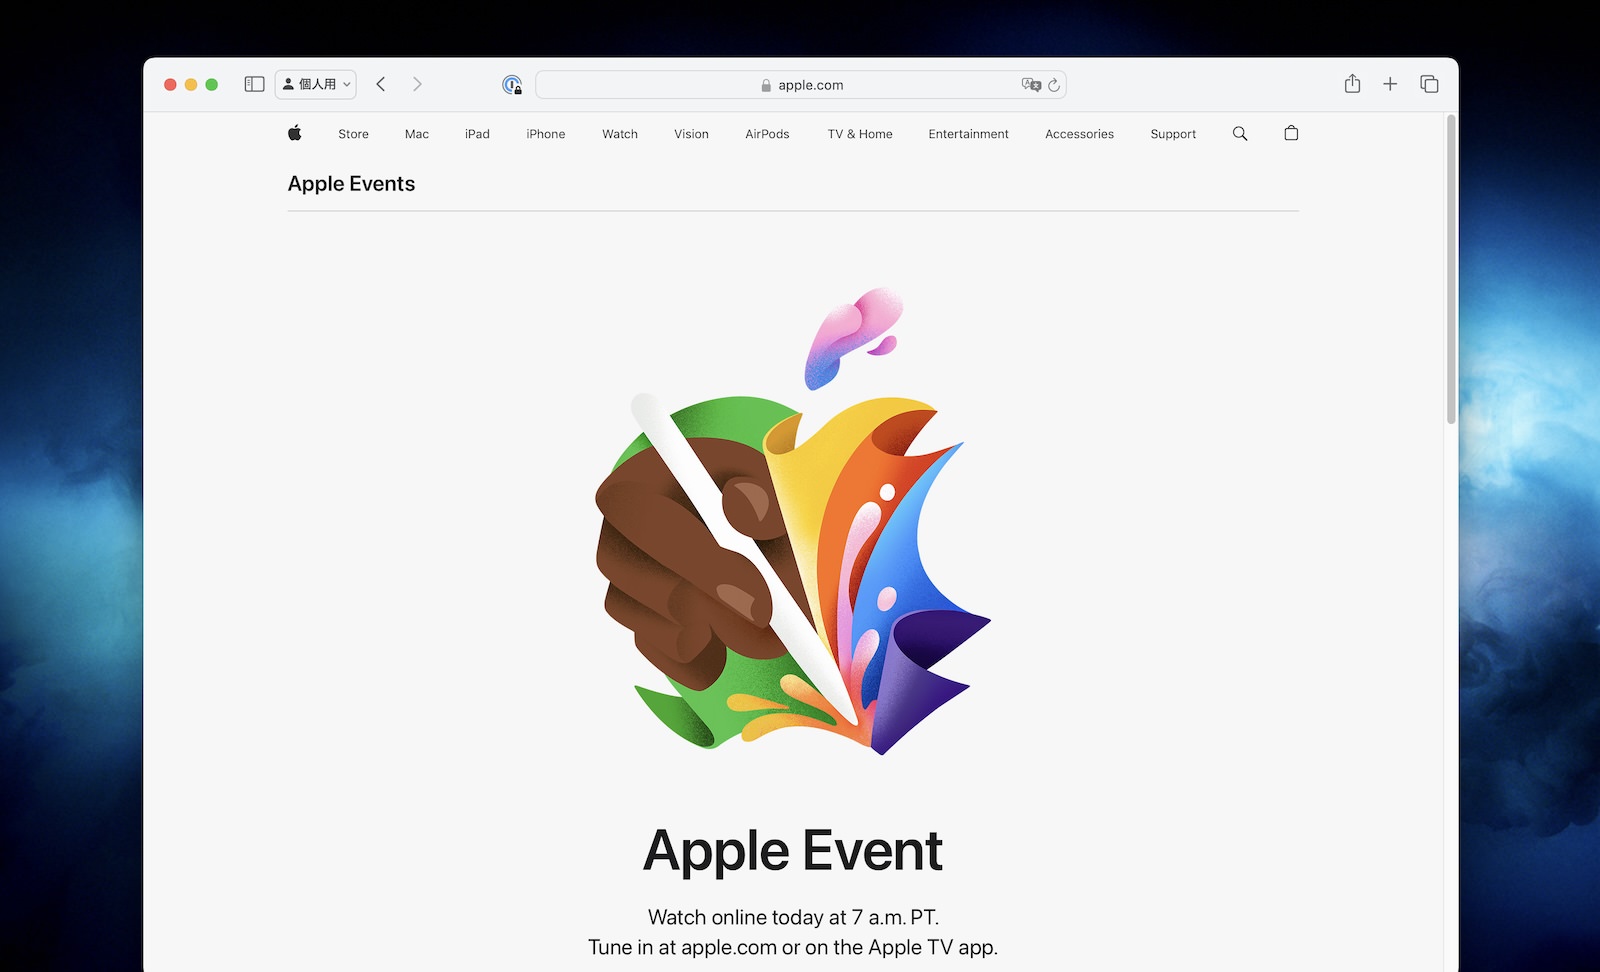 Apple Event on Safari